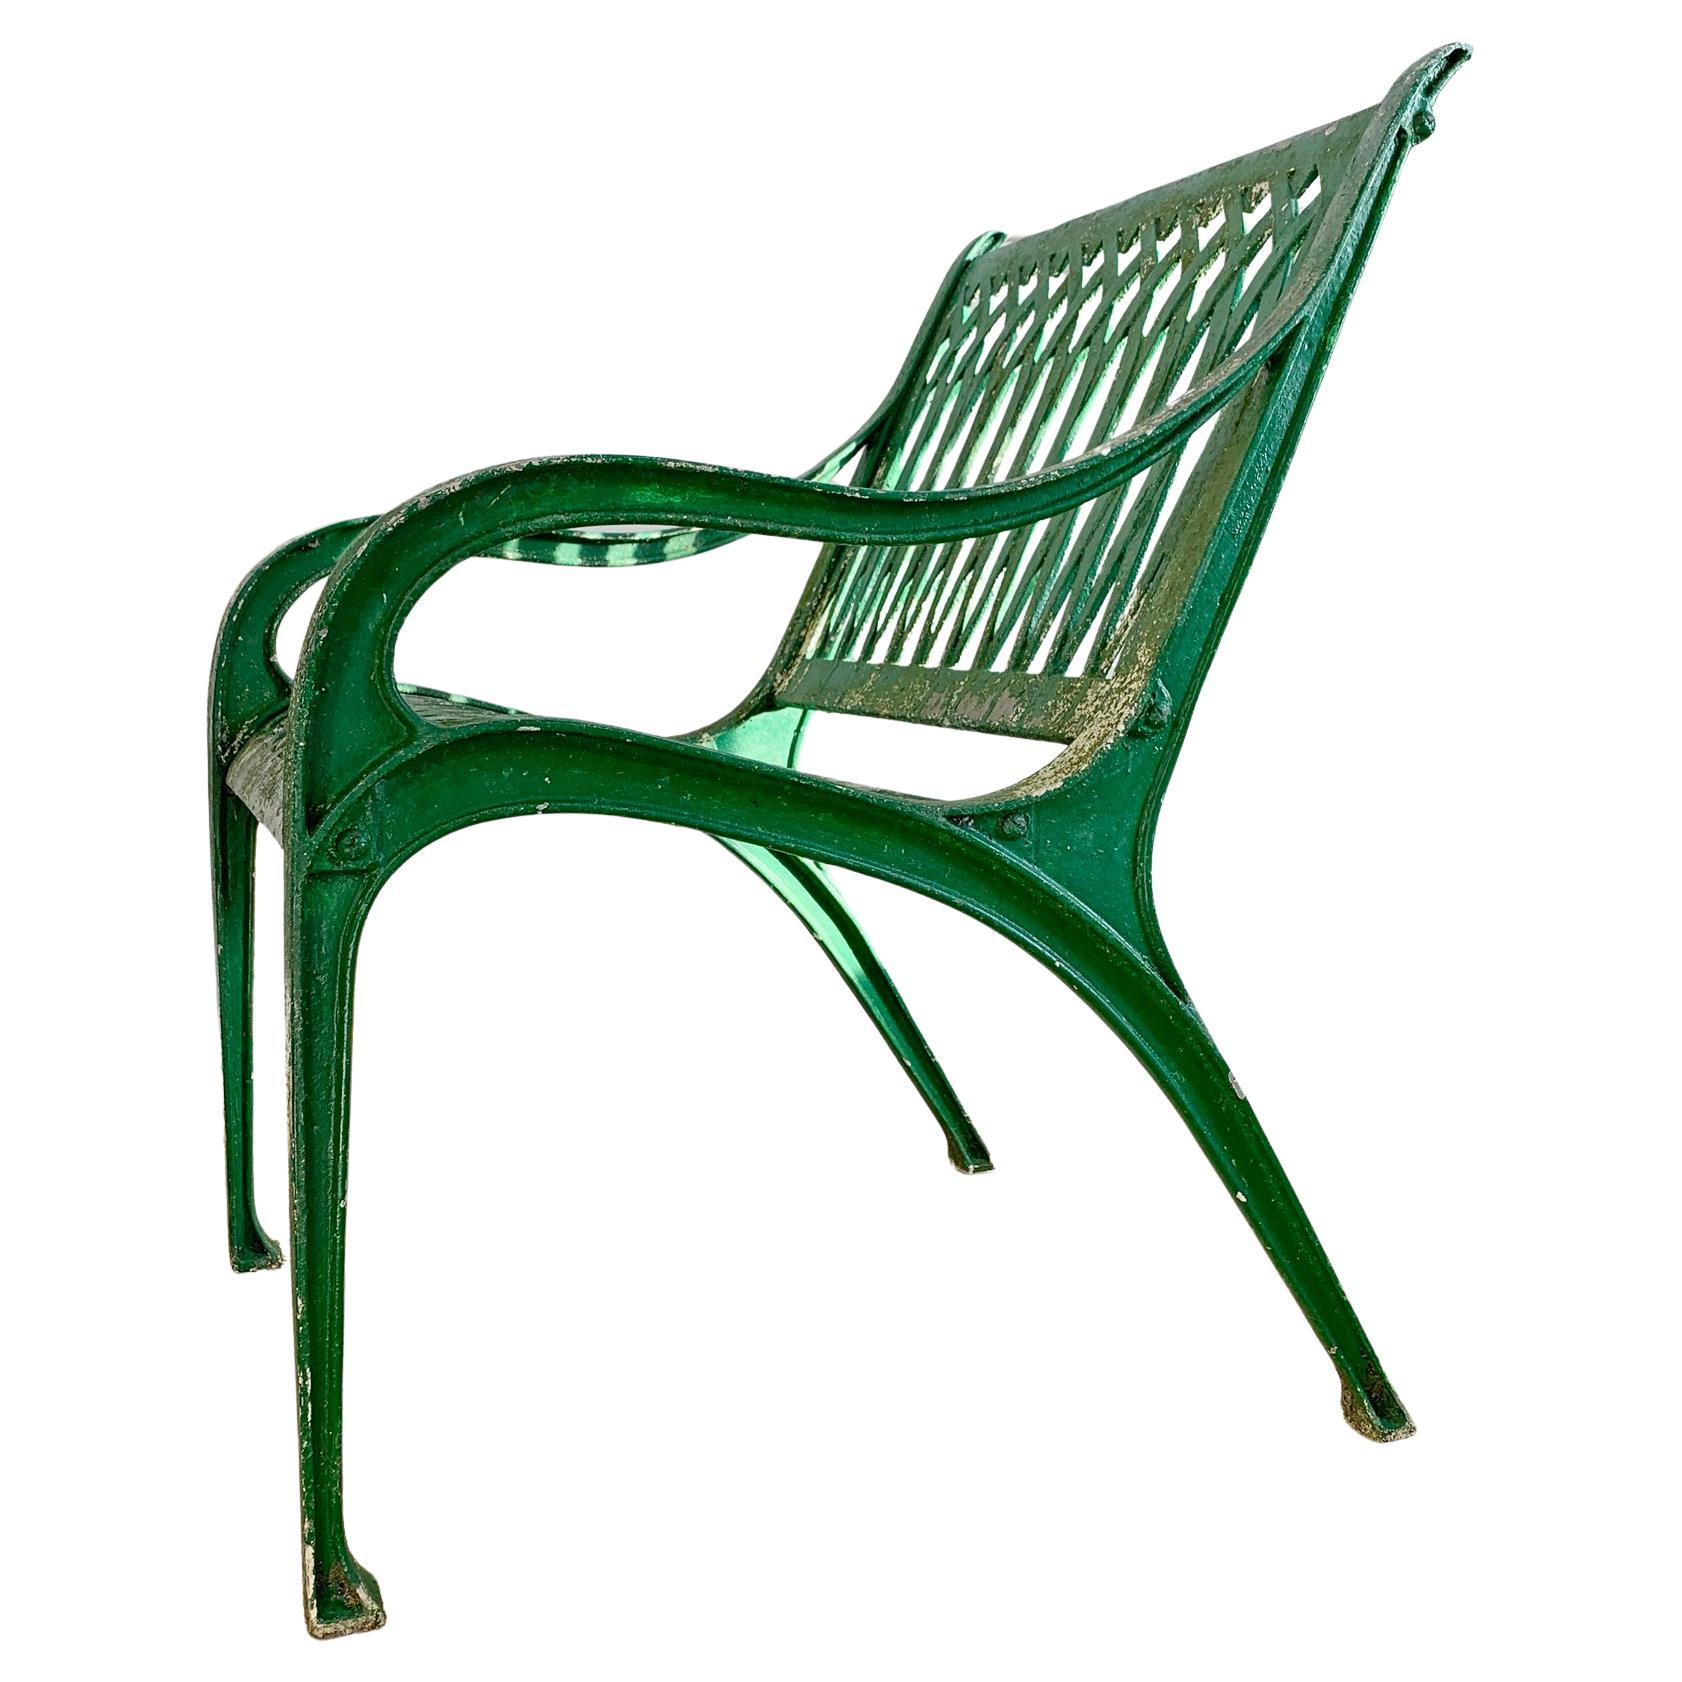 Chaise de jardin ou d'orangerie très esthétique, en fonte d'aluminium et peinte en vert émeraude. Anglais vers 1950.

Hauteur 82cm x Largeur 60cm x Profondeur 67cm

Hauteur du siège 45cm